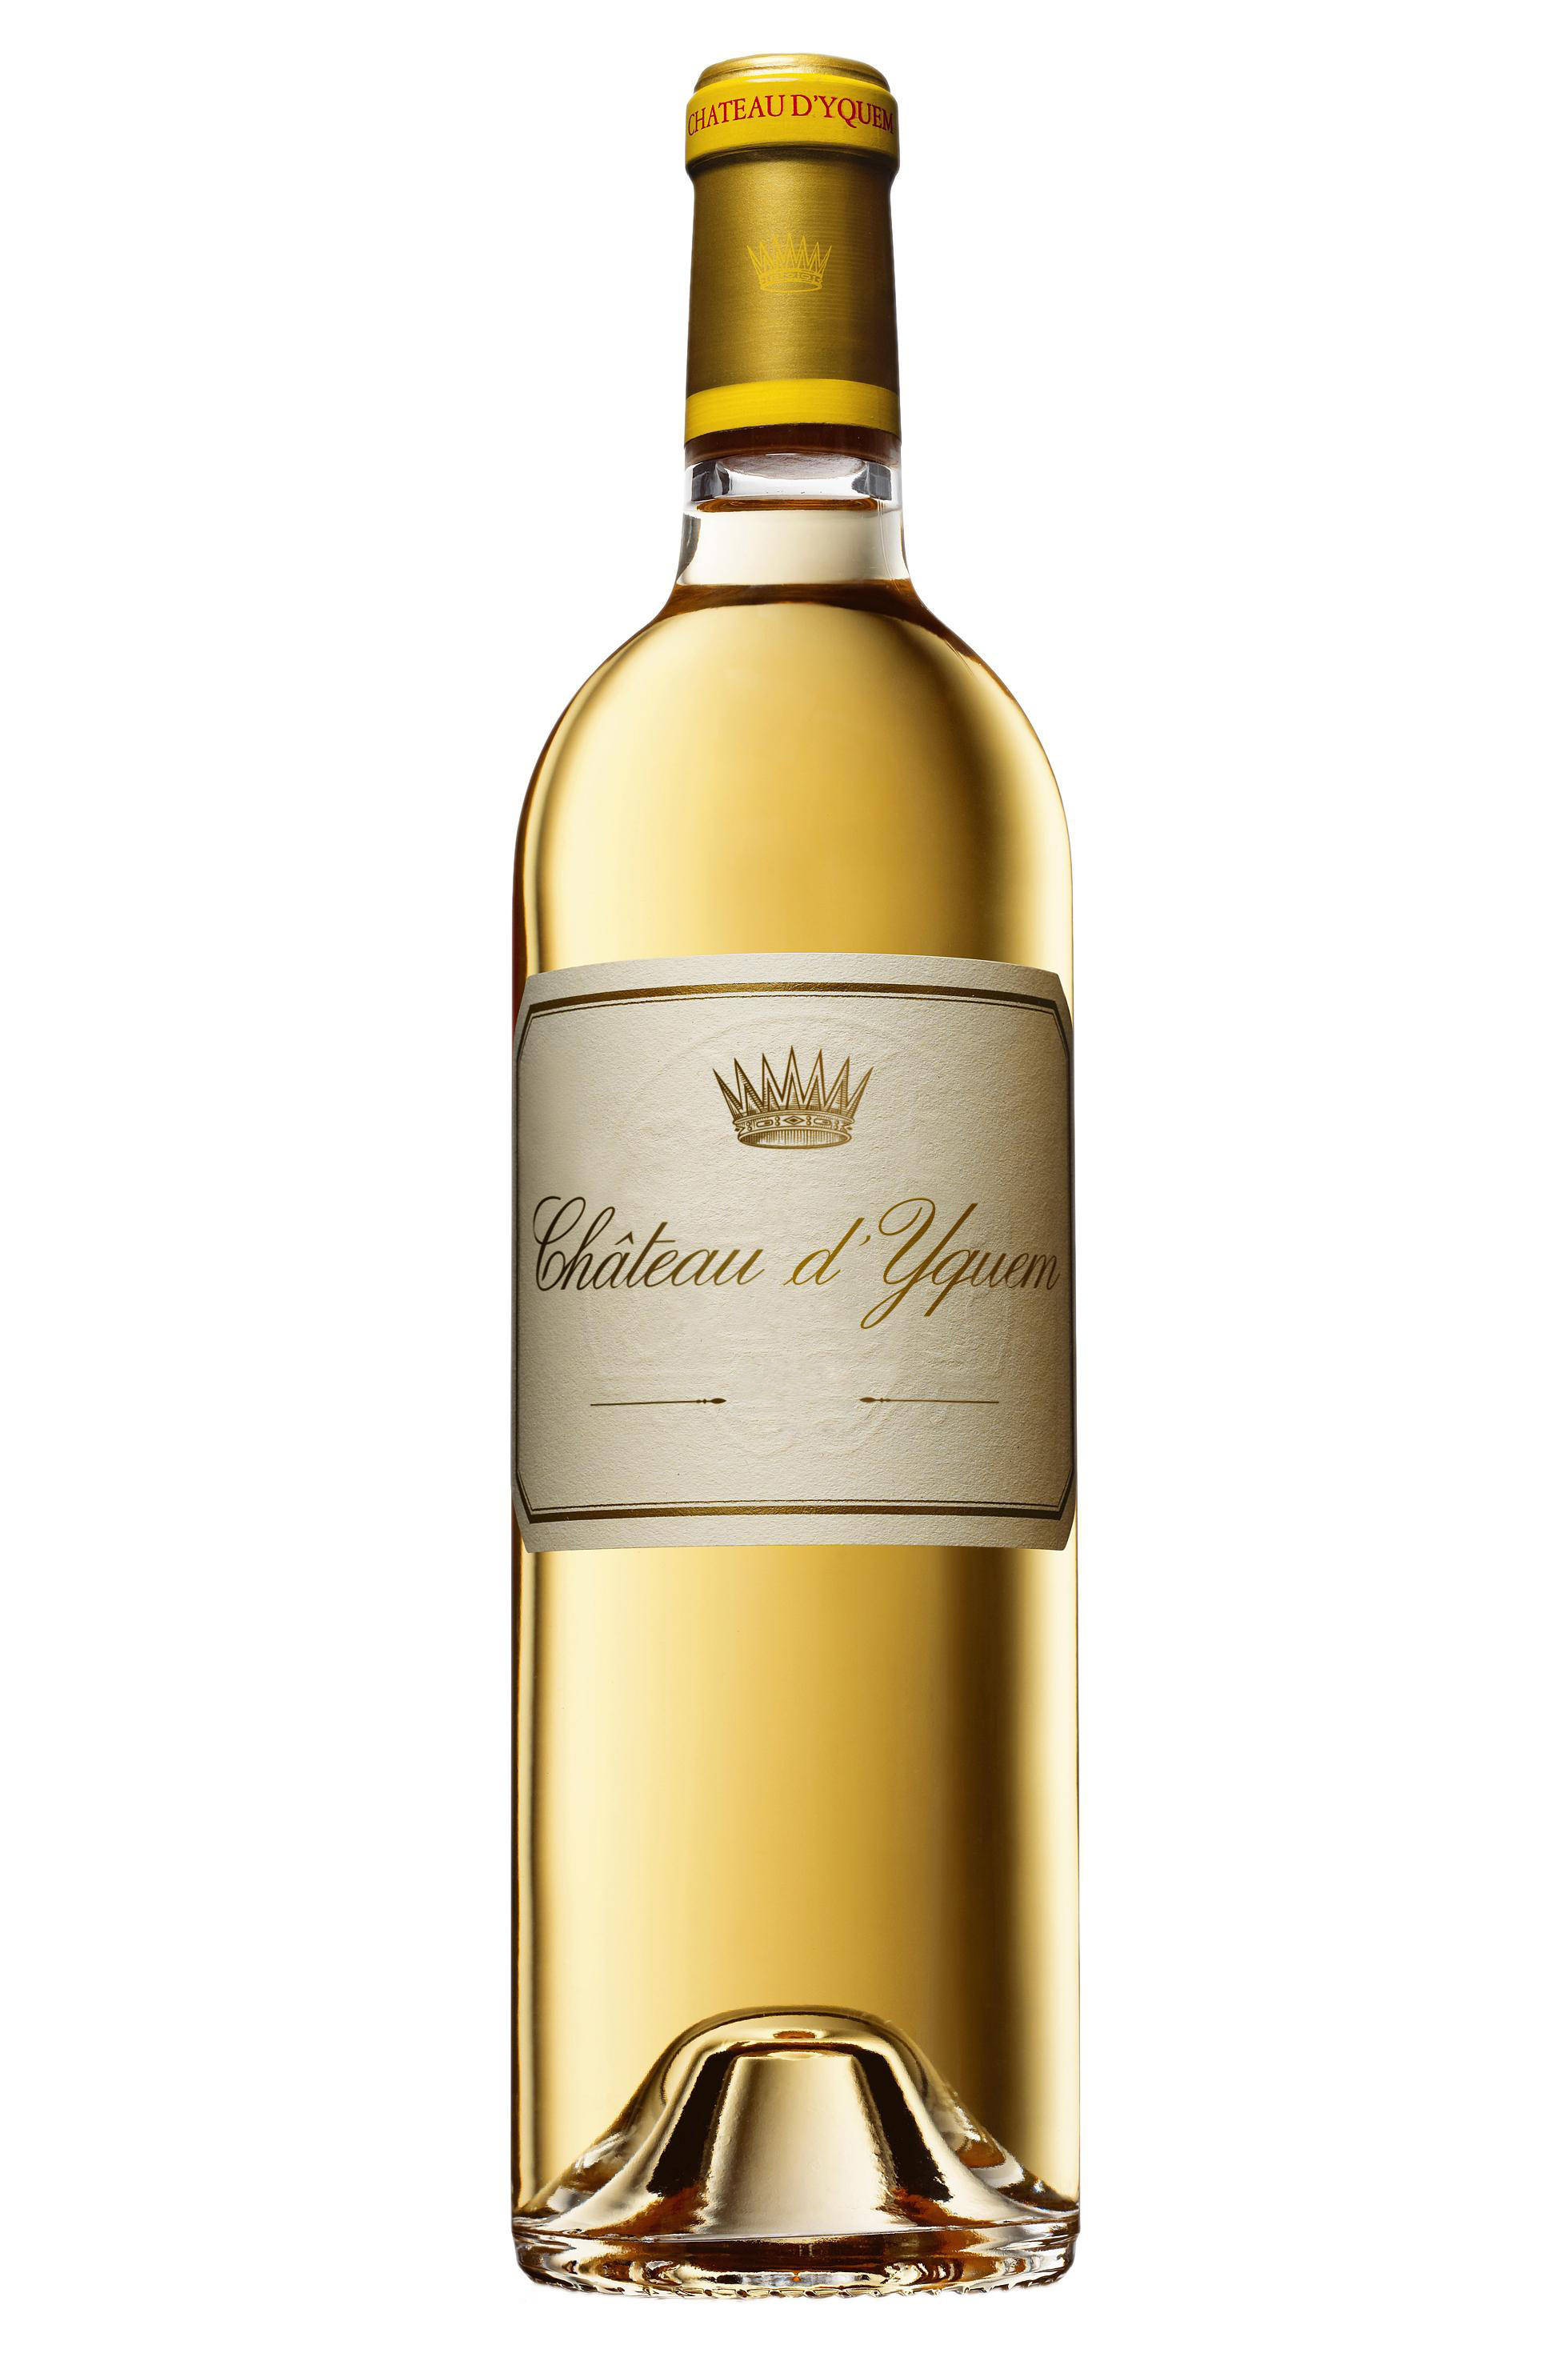 Шато белое вино. Шато Икем. Шато-Икем вино. Вино Сотерн Шато де Икем. Chateau d'Yquem, 2005.